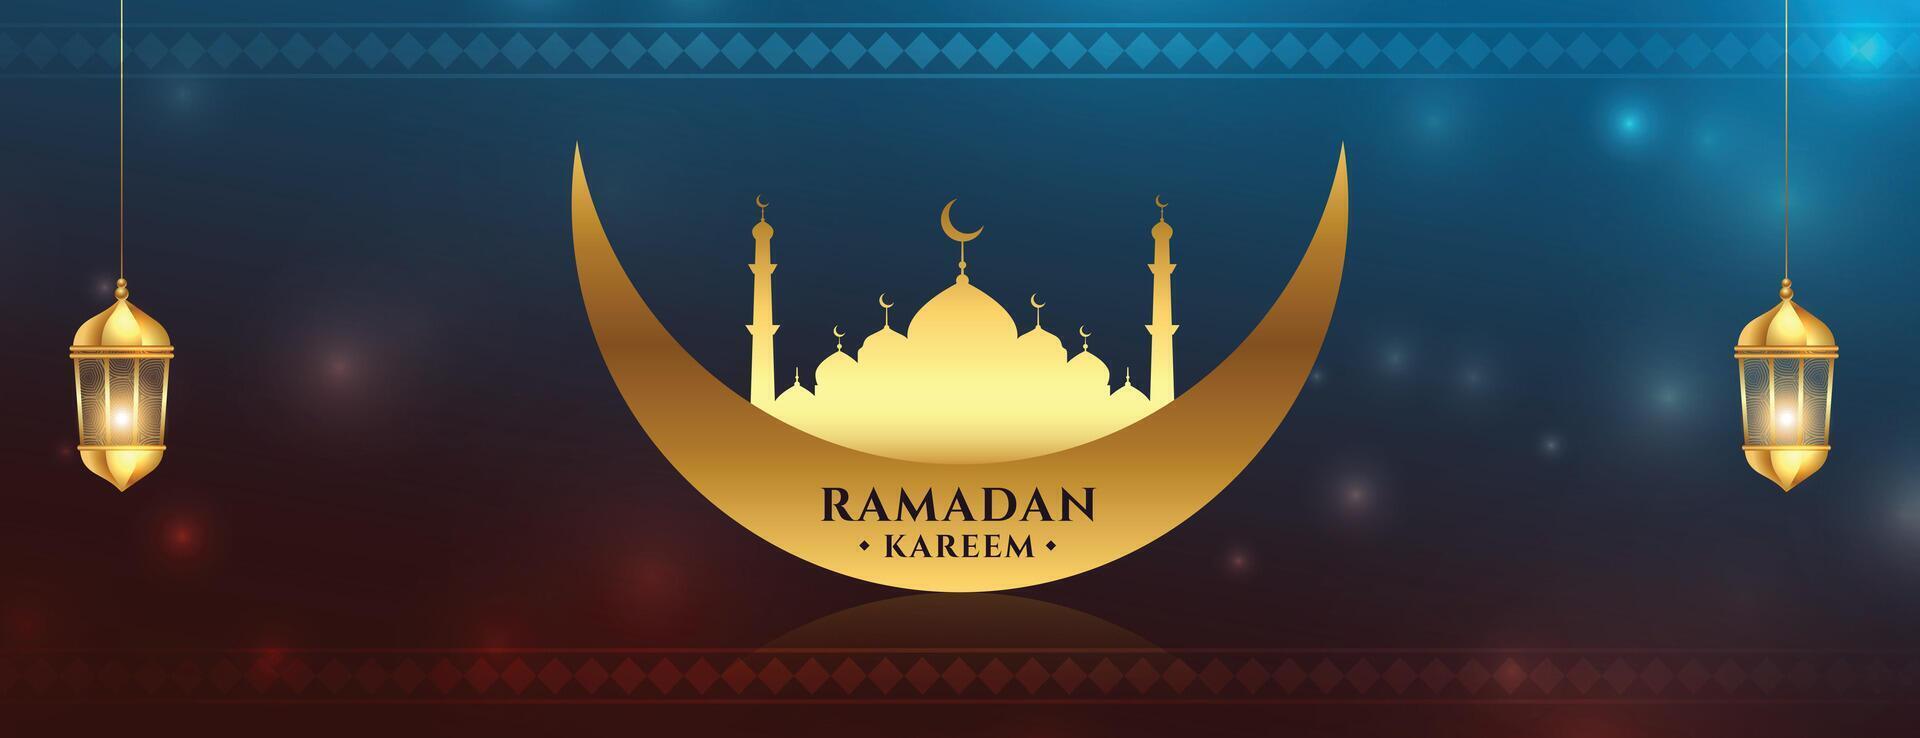 ramadan kareem välsignelse baner med gyllene moské och måne vektor